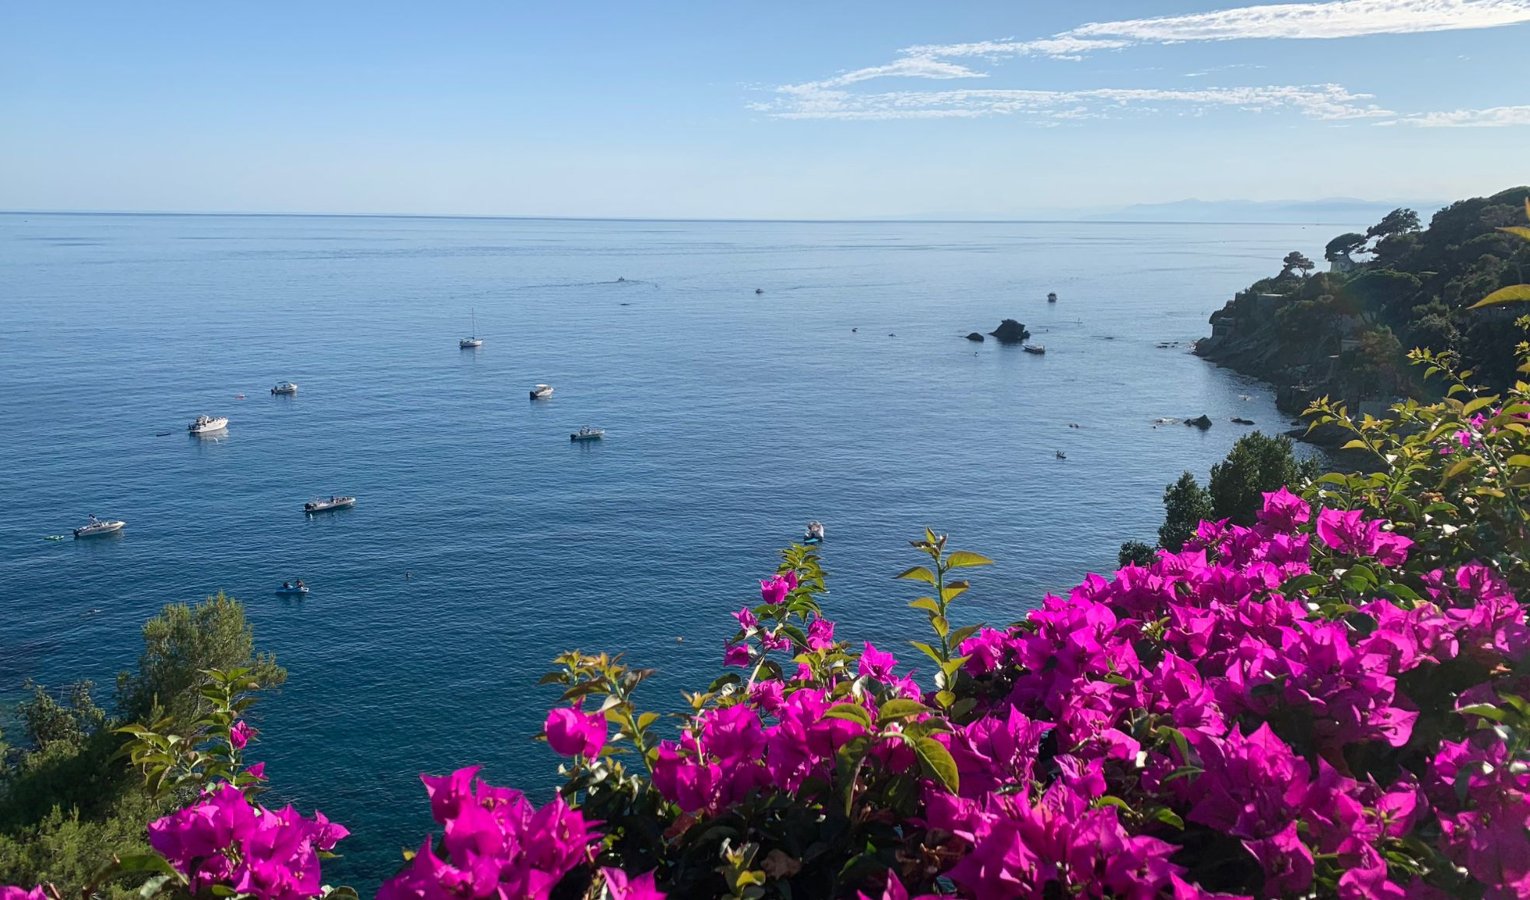 Meteo in Liguria, sole e temperature alte: le previsioni